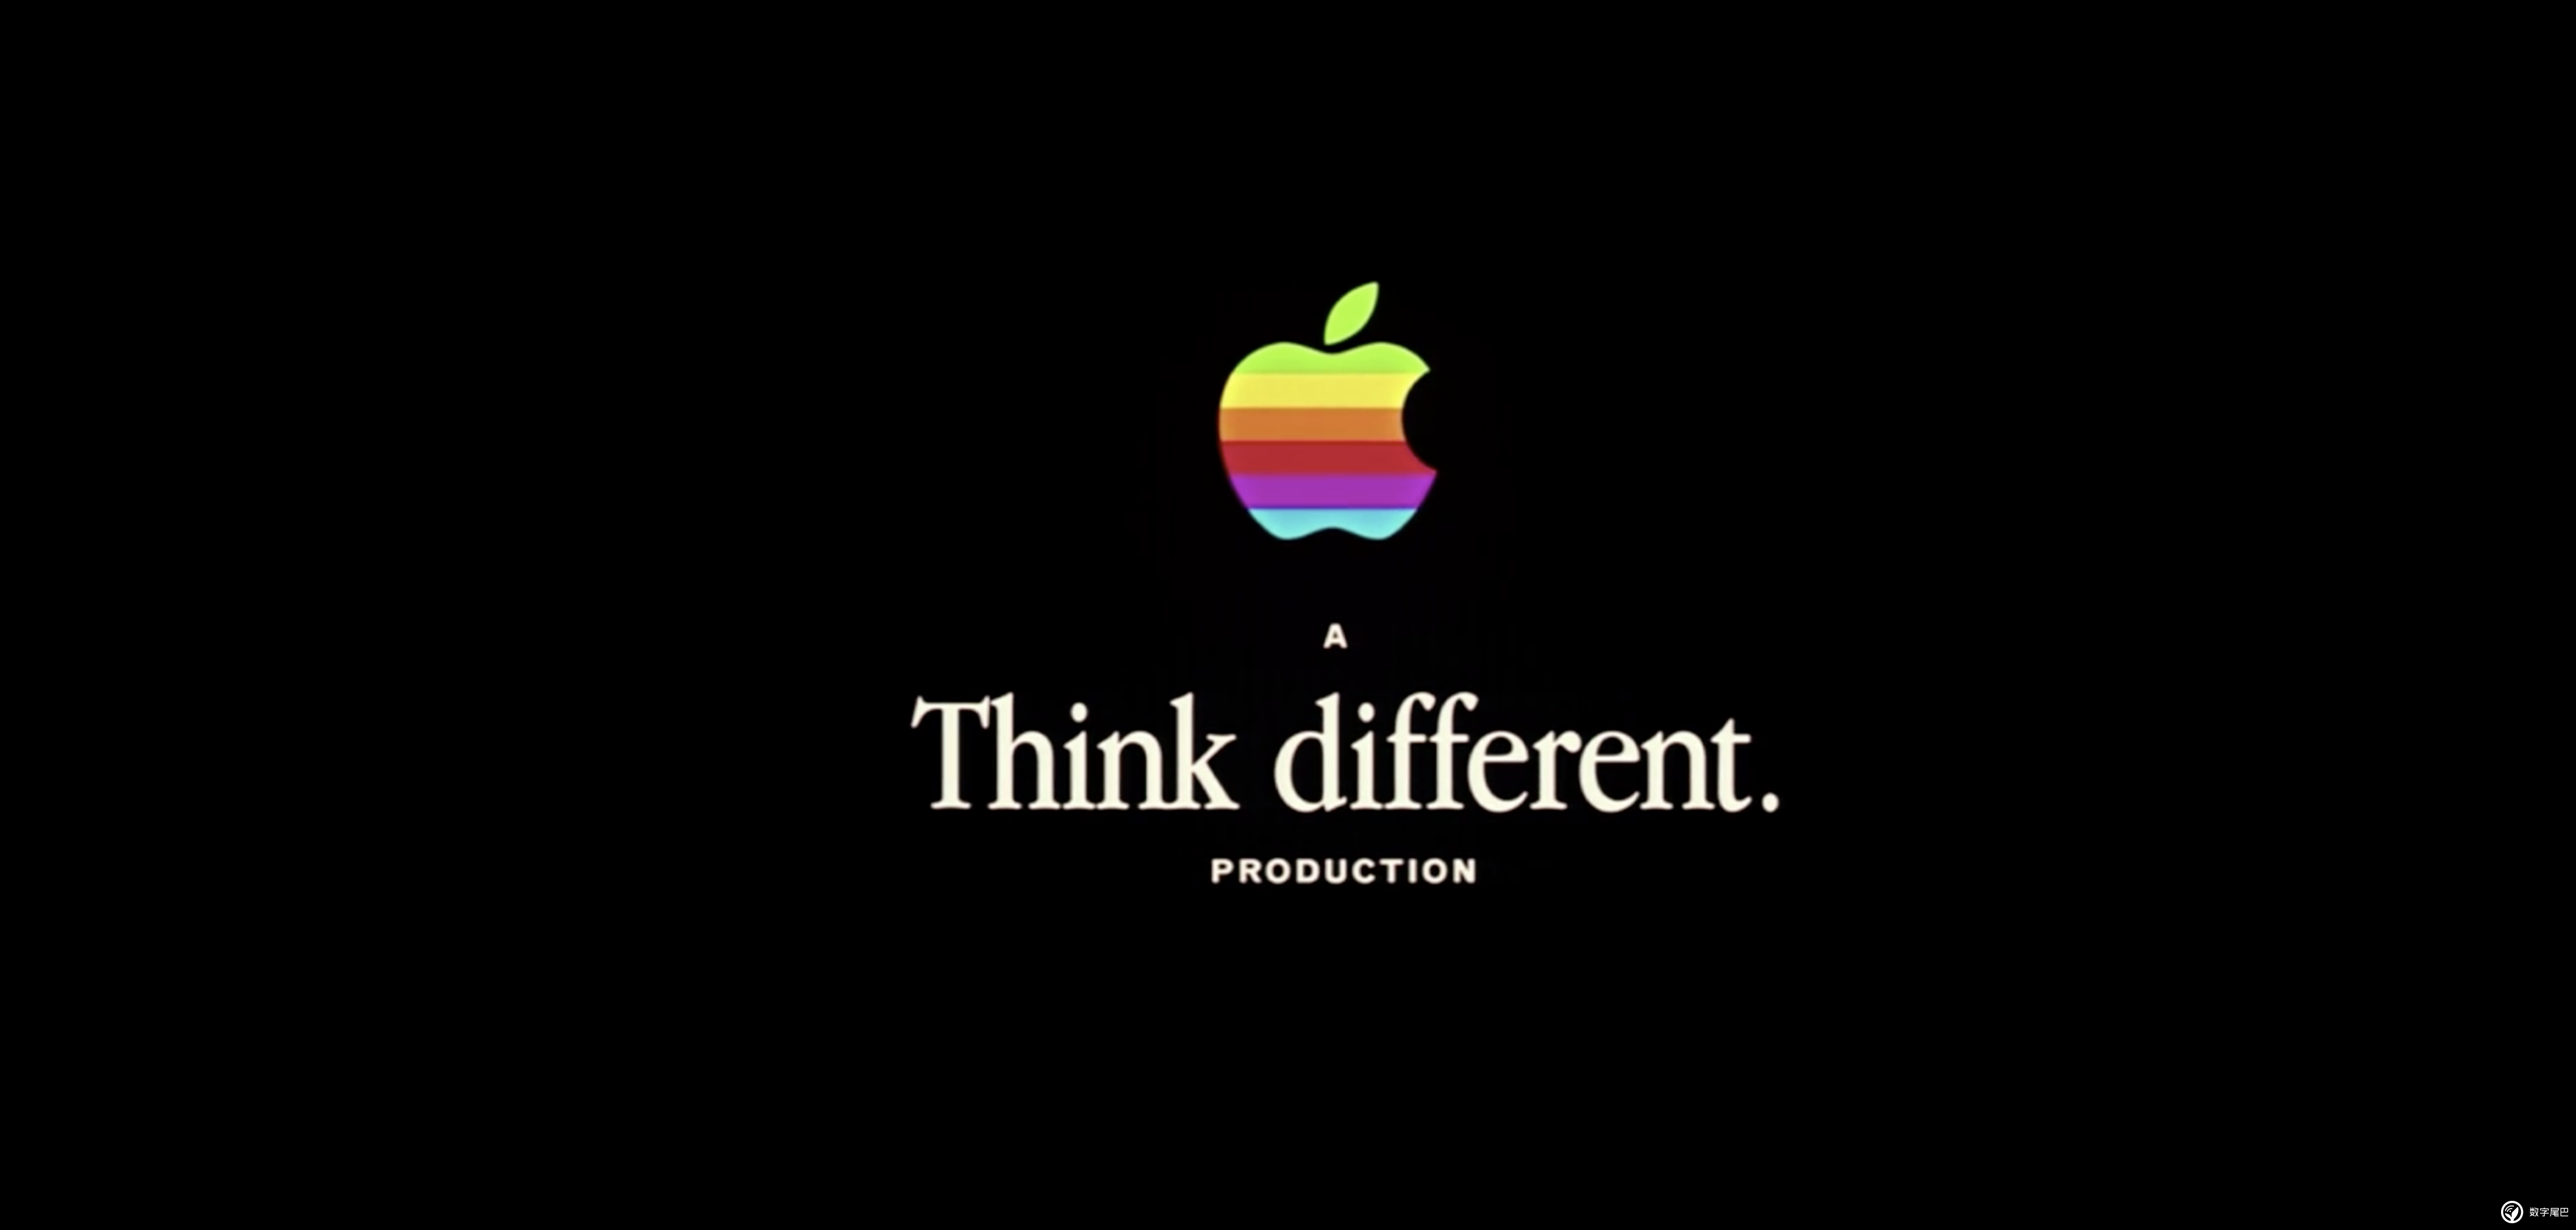 苹果手机的广告语苹果手机的创意广告语-第1张图片-太平洋在线下载